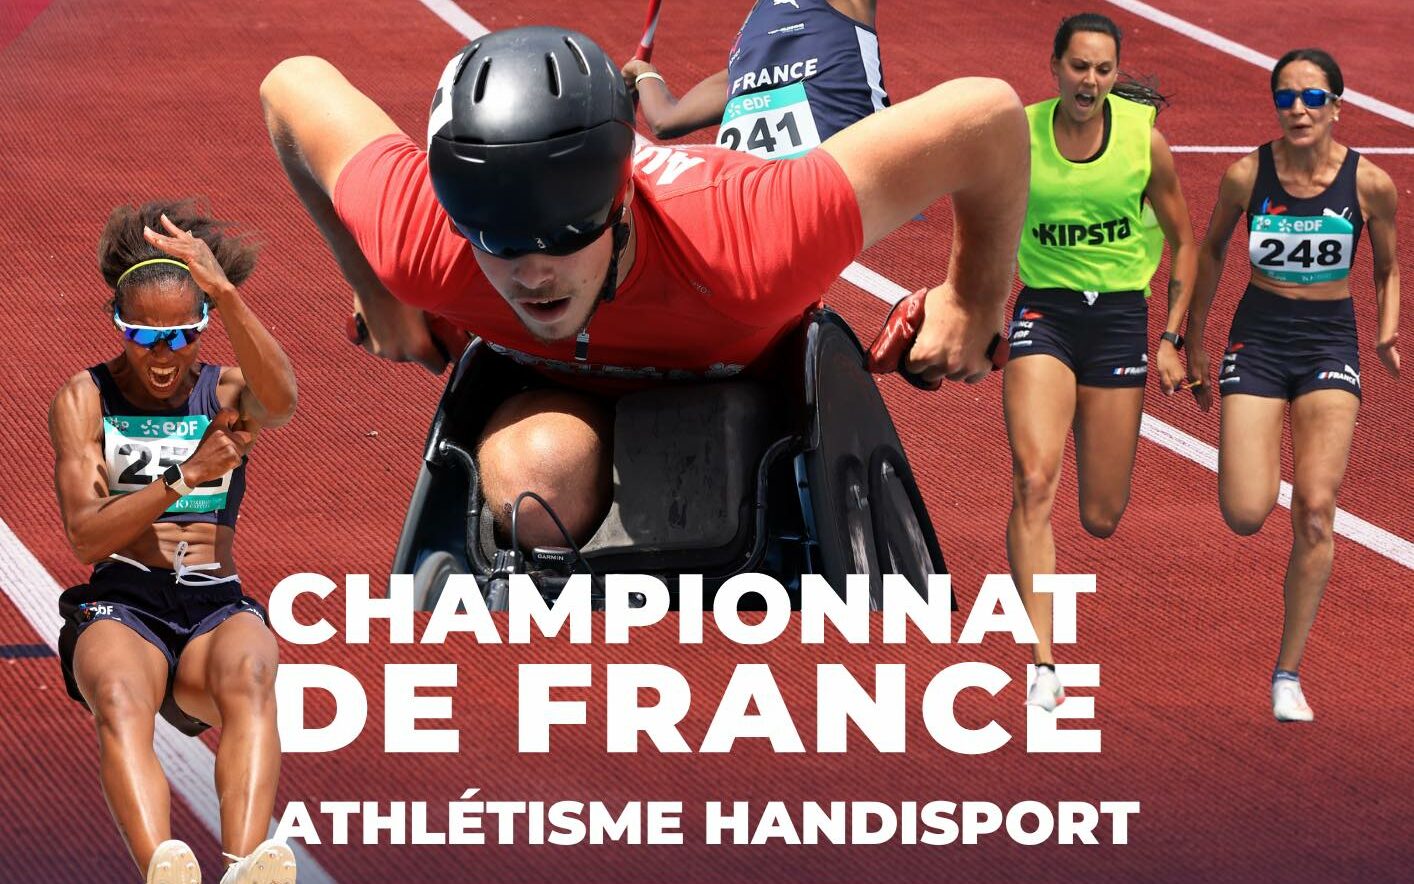 18 asémistes au Championnat de France Handisport à Saint-Etienne